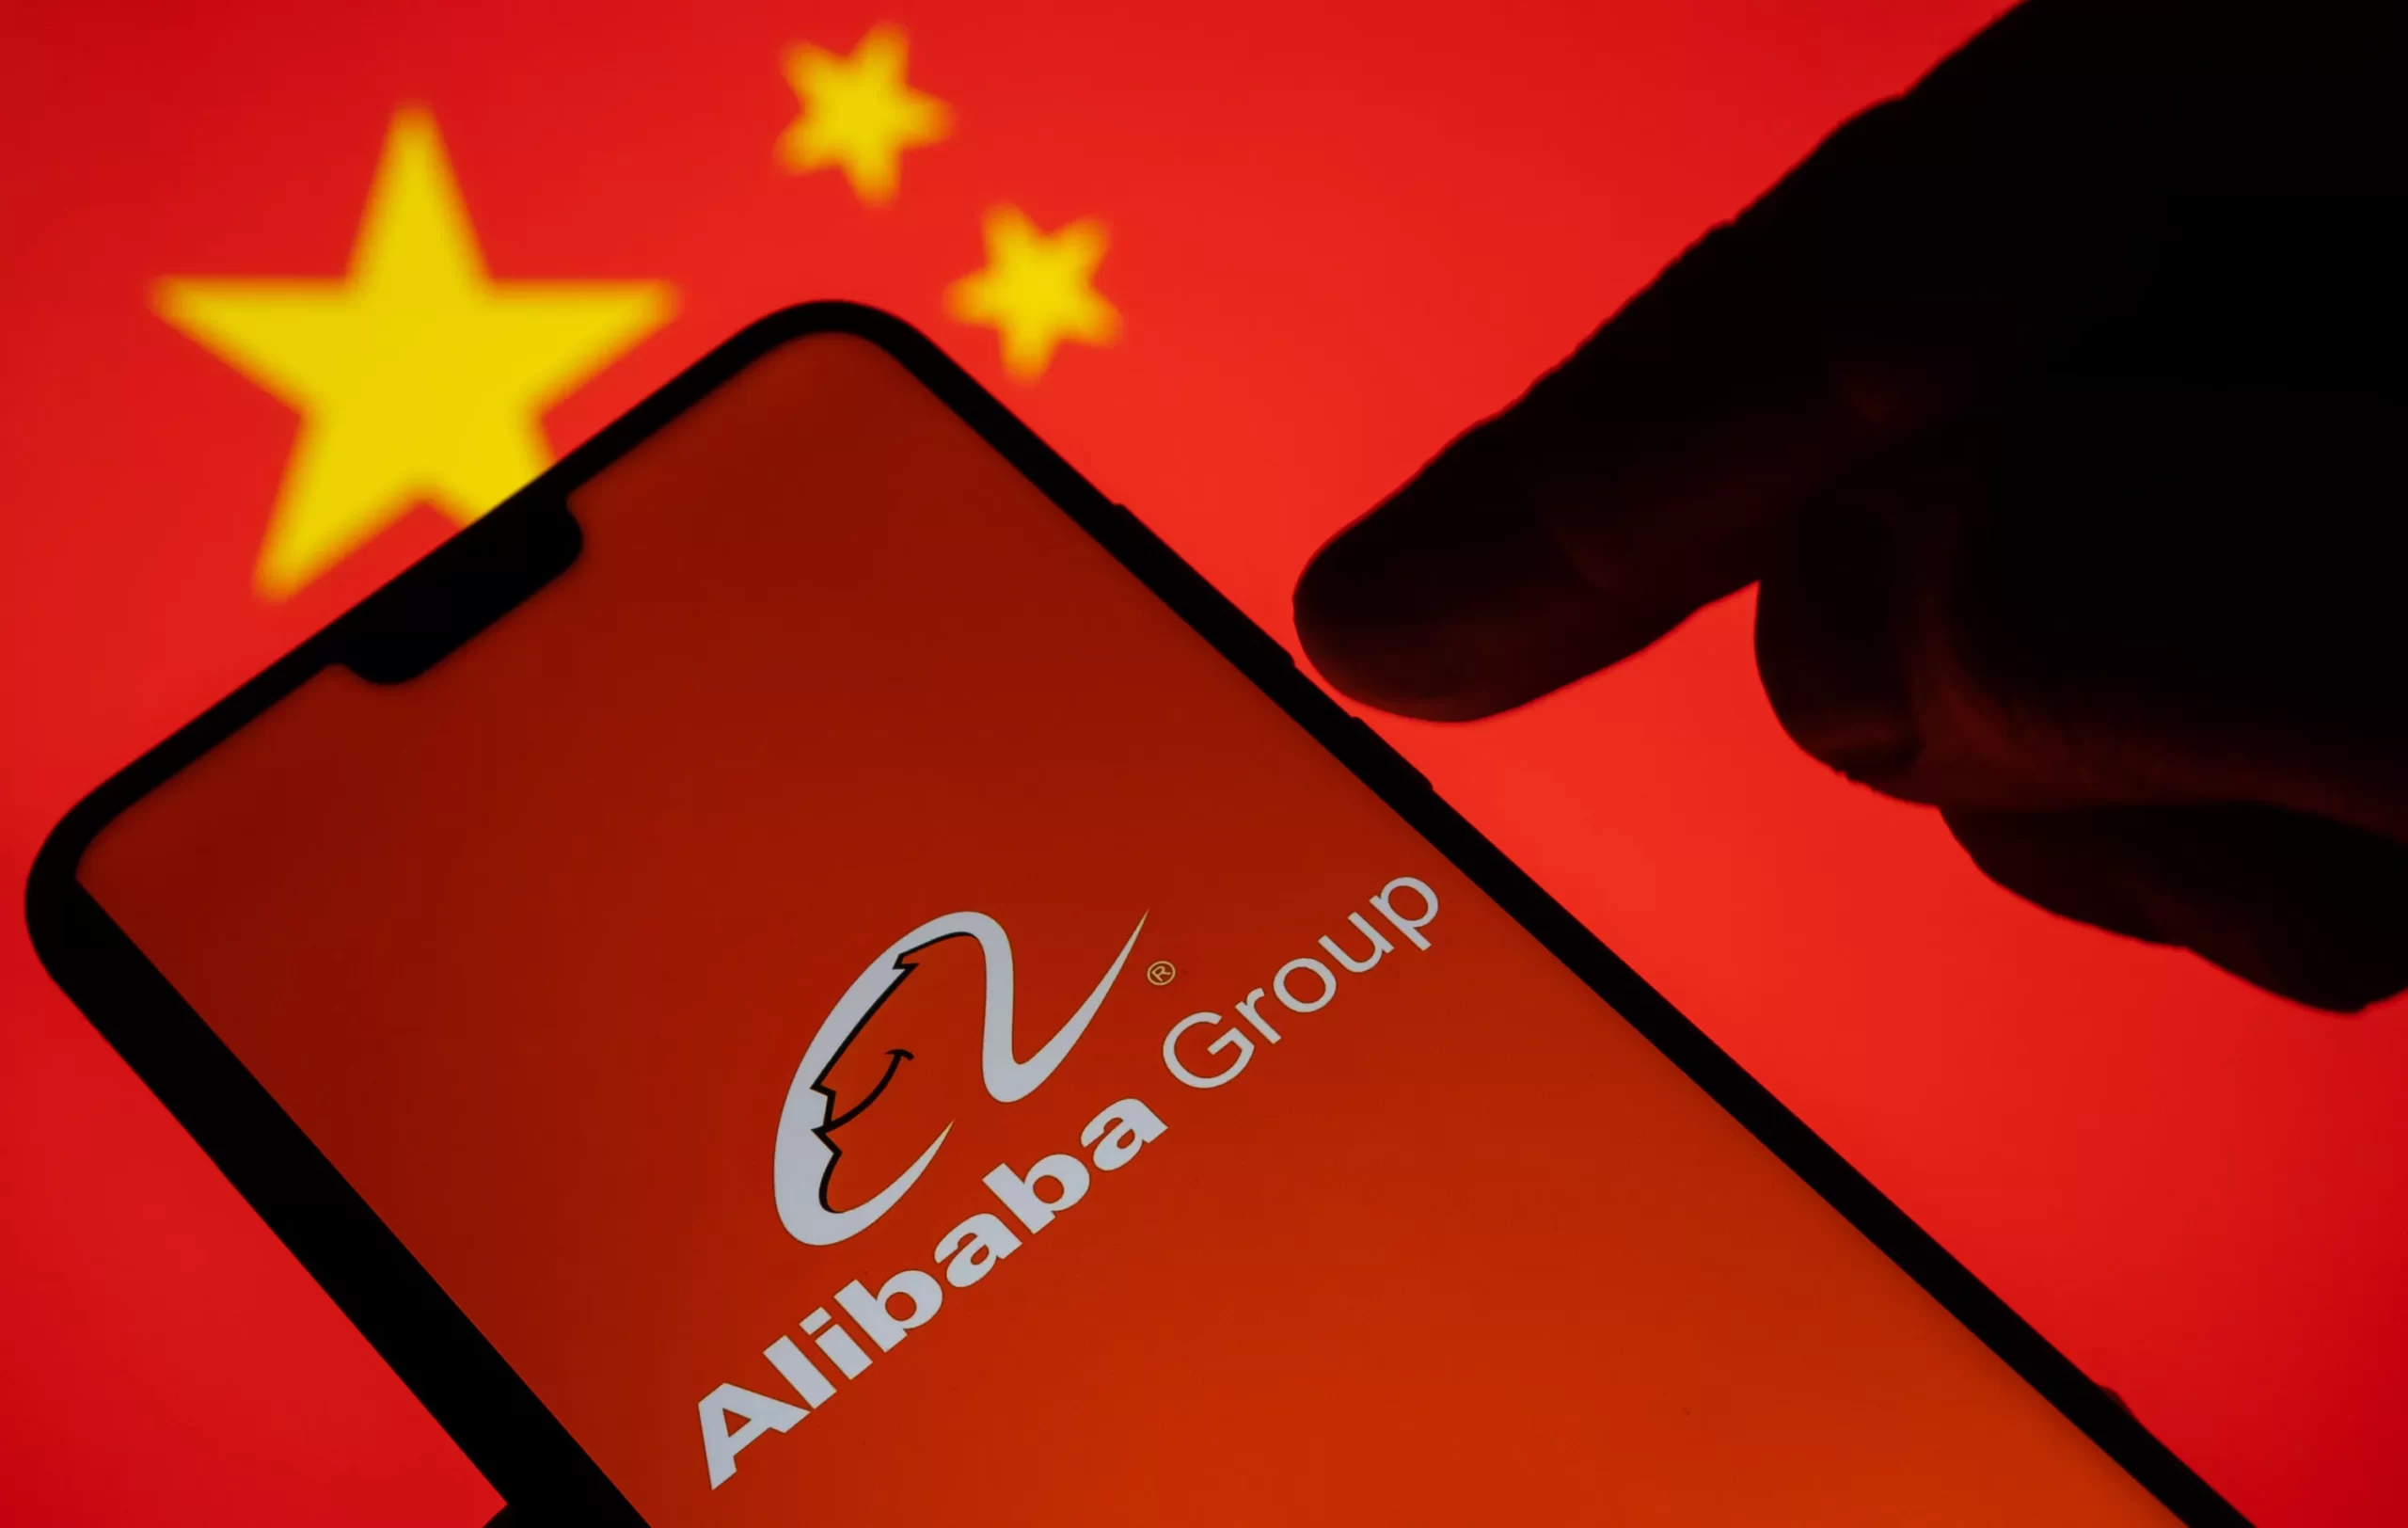 Photo of 5 señales de alerta sobre las compras en Alibaba, según los expertos